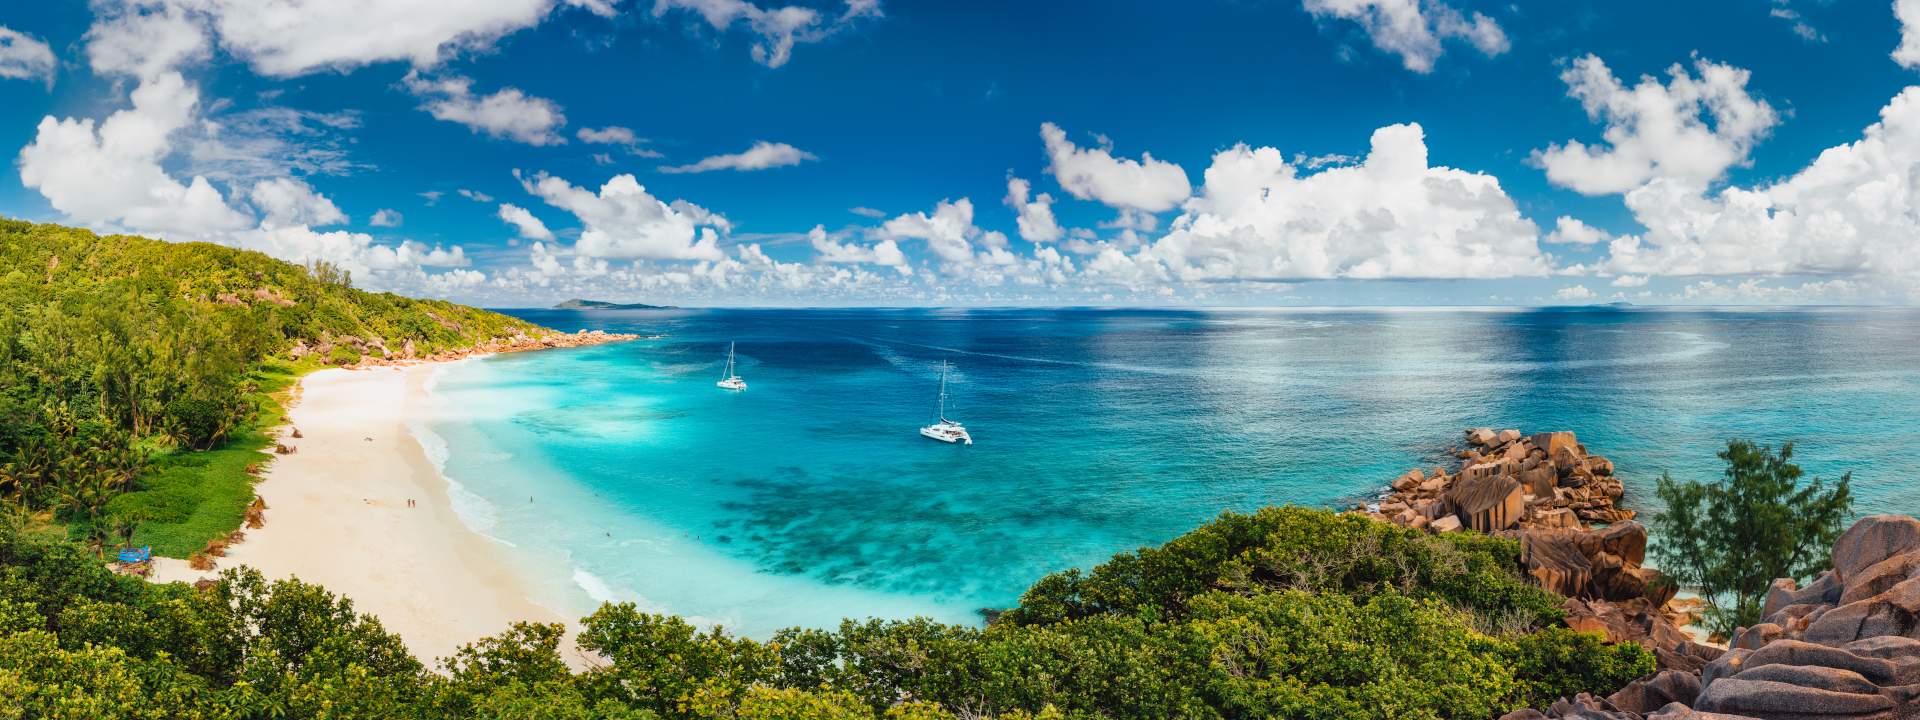 Las Seychelles, uno de los archipiélagos más bellos del mundo